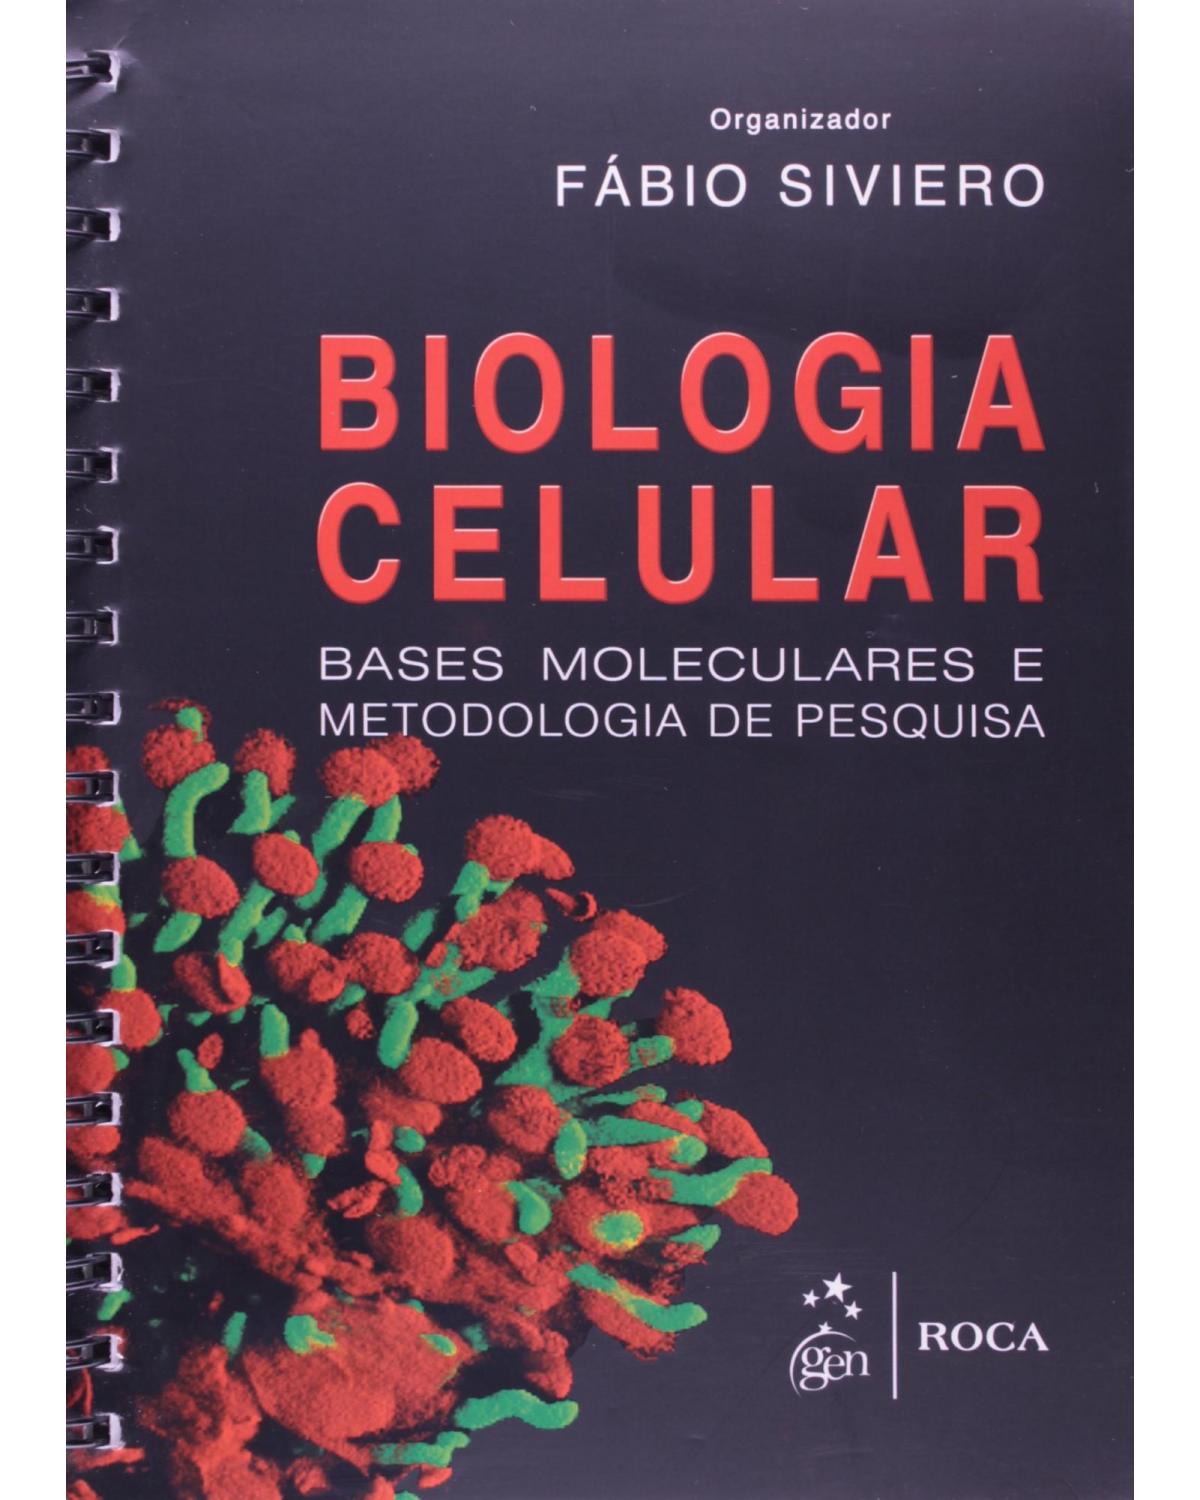 Biologia celular - Bases moleculares e metodologia de pesquisa - 1ª Edição | 2013